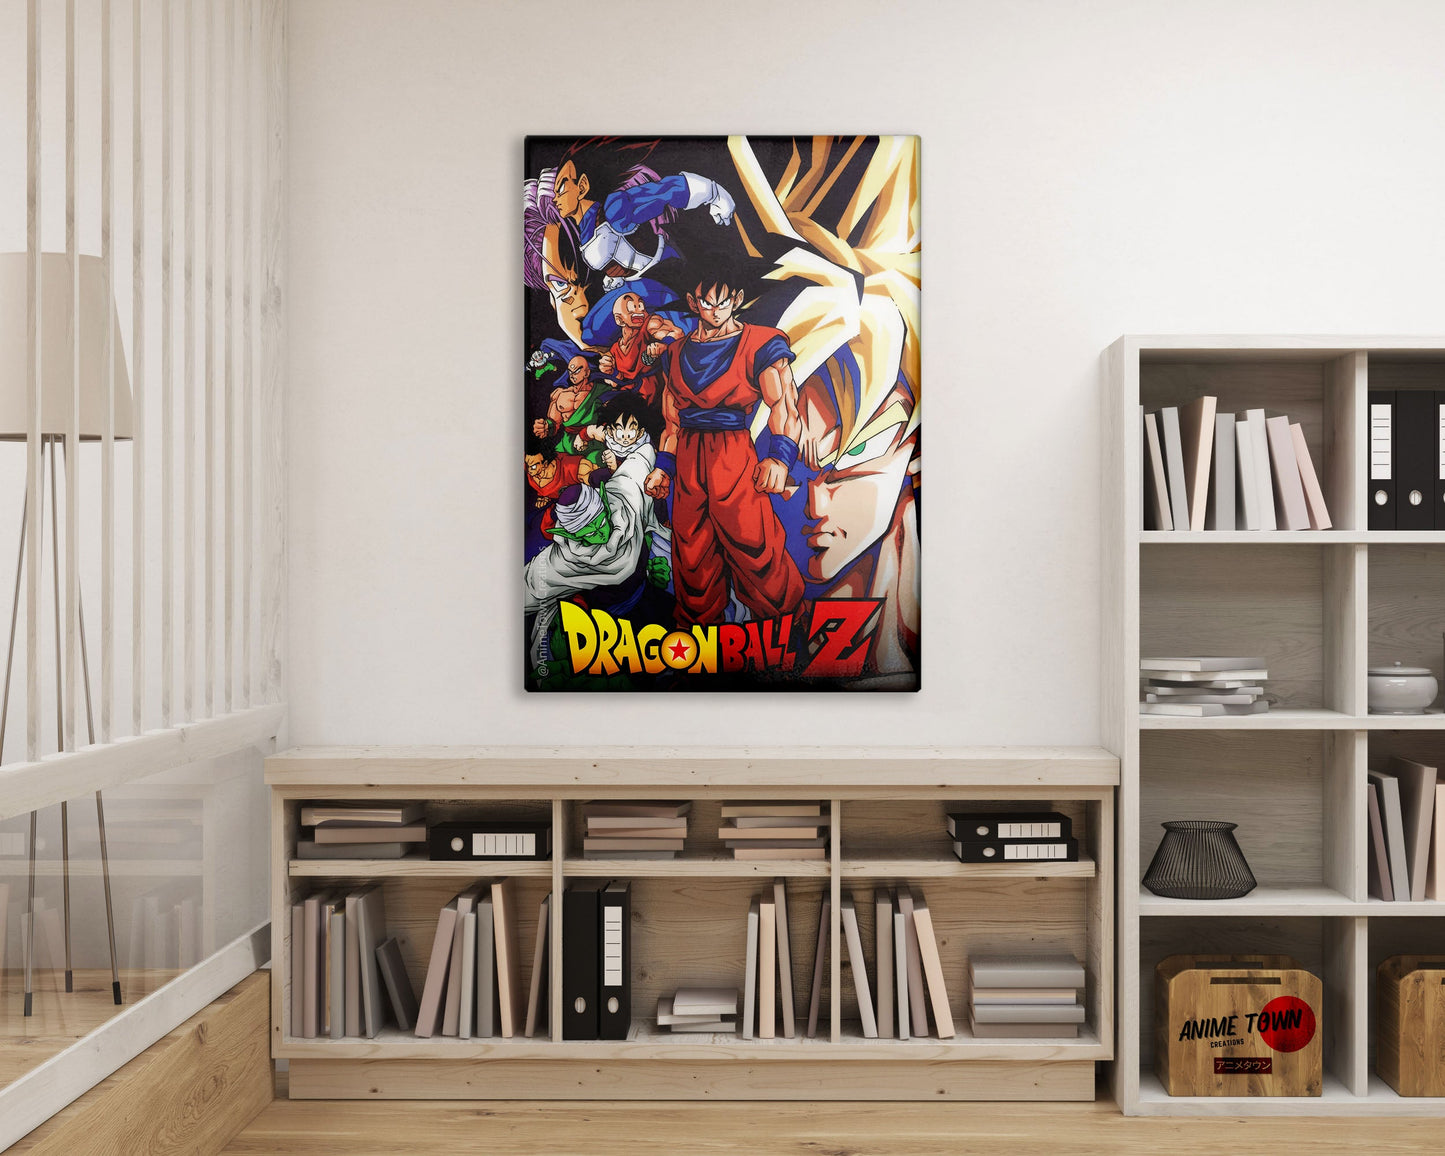 Anime Town Creations Metal Poster Dragon Ball Z 11" x 17" Home Goods - Anime Dragon Ball Metal Poster